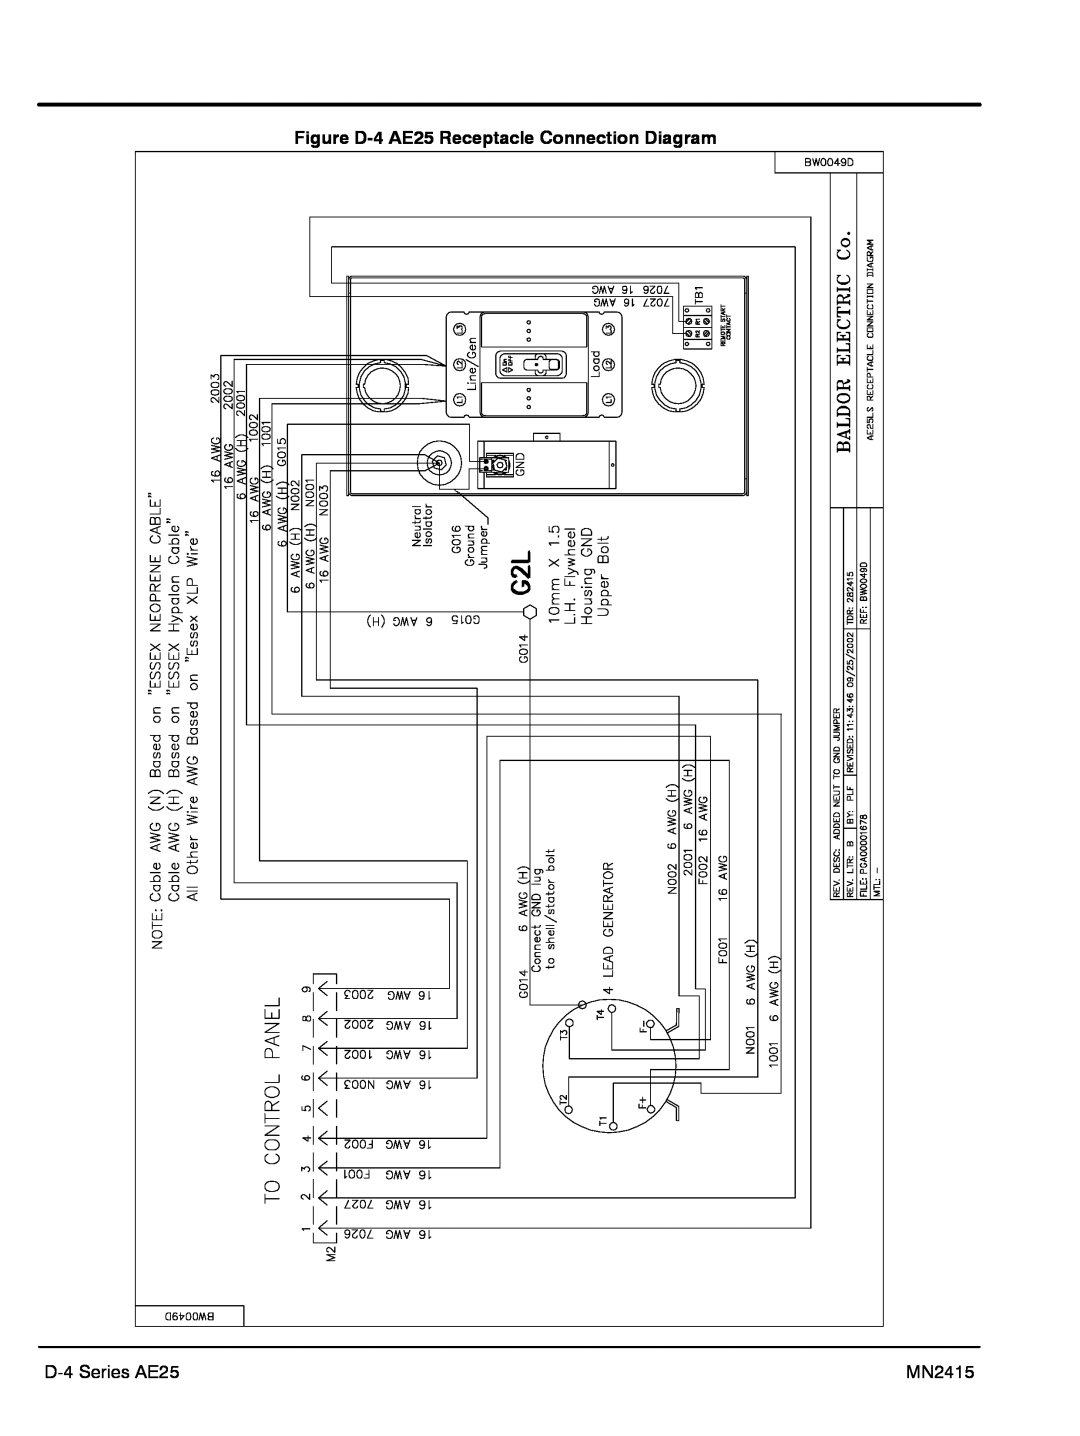 Baldor AE11, AE10, AE8 manual Figure D-4 AE25 Receptacle Connection Diagram, D-4 Series AE25, MN2415 